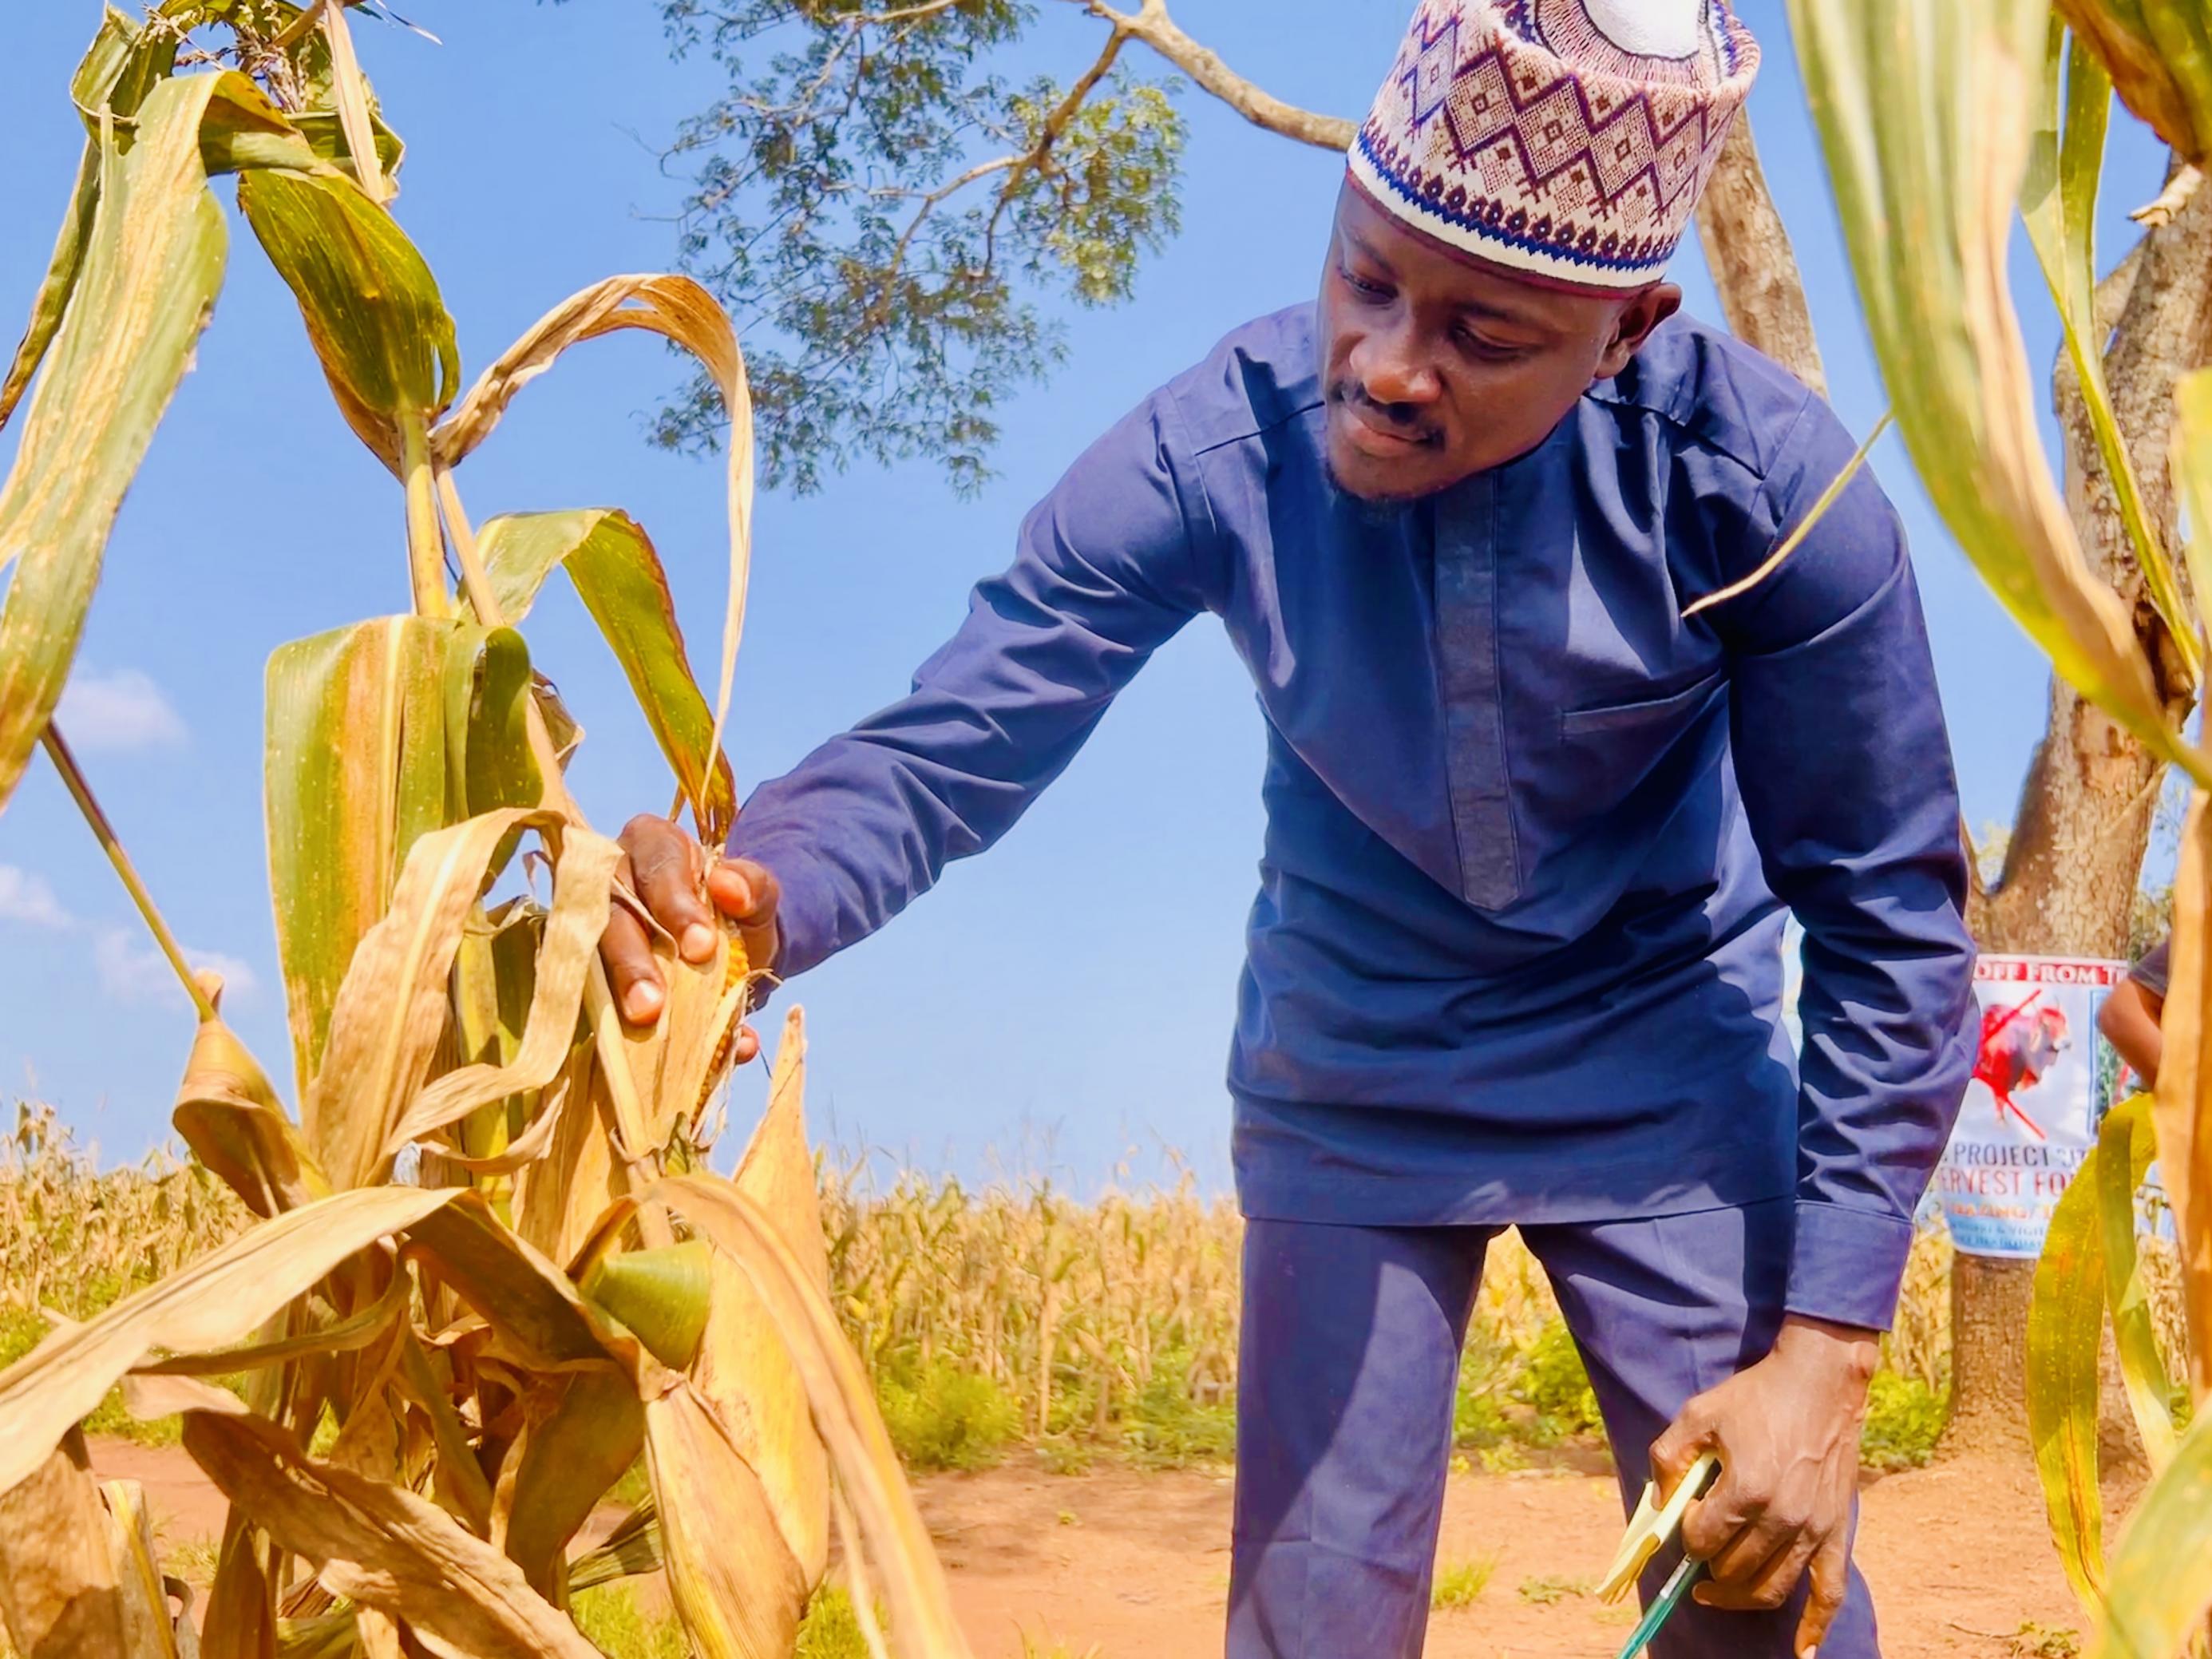 ndarbeiter Salman Abdulhakeem quetscht einen Maiskolben aus, um zu prüfen, wie viele Körner gekeimt sind, in einem Frauenbetrieb in Kwara, Nigeria.